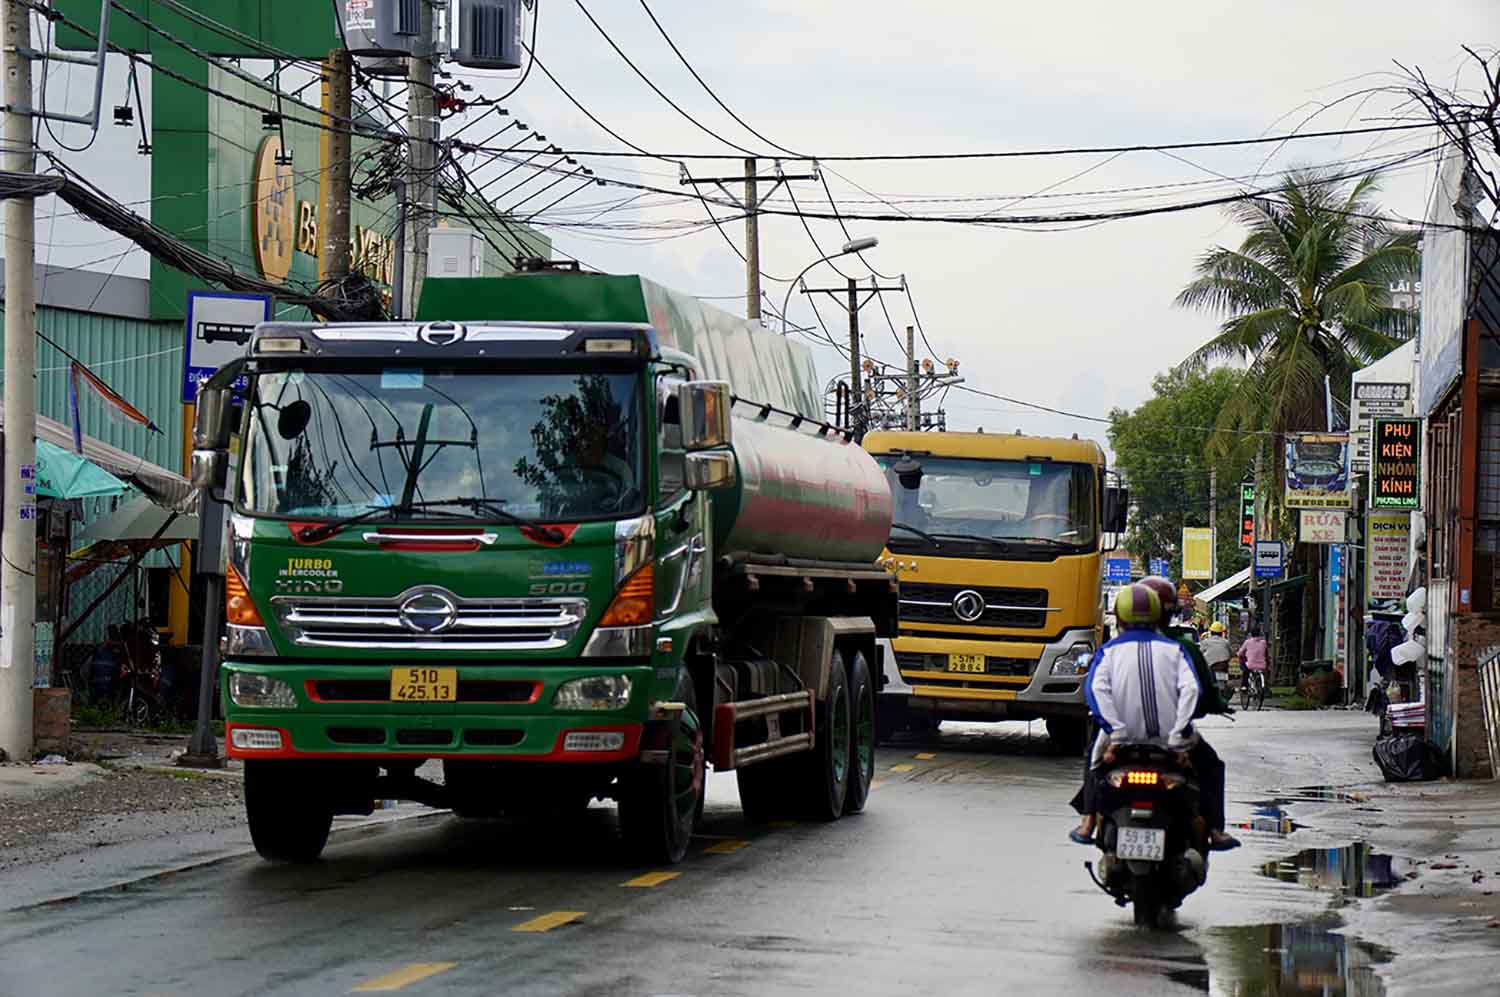 Hiện tuyến đường Đỗ Xuân Hợp thường xuyên bị kẹt xe do mặt đường hẹp từ 7-12m và có nhiều xe tải, container lưu thông.